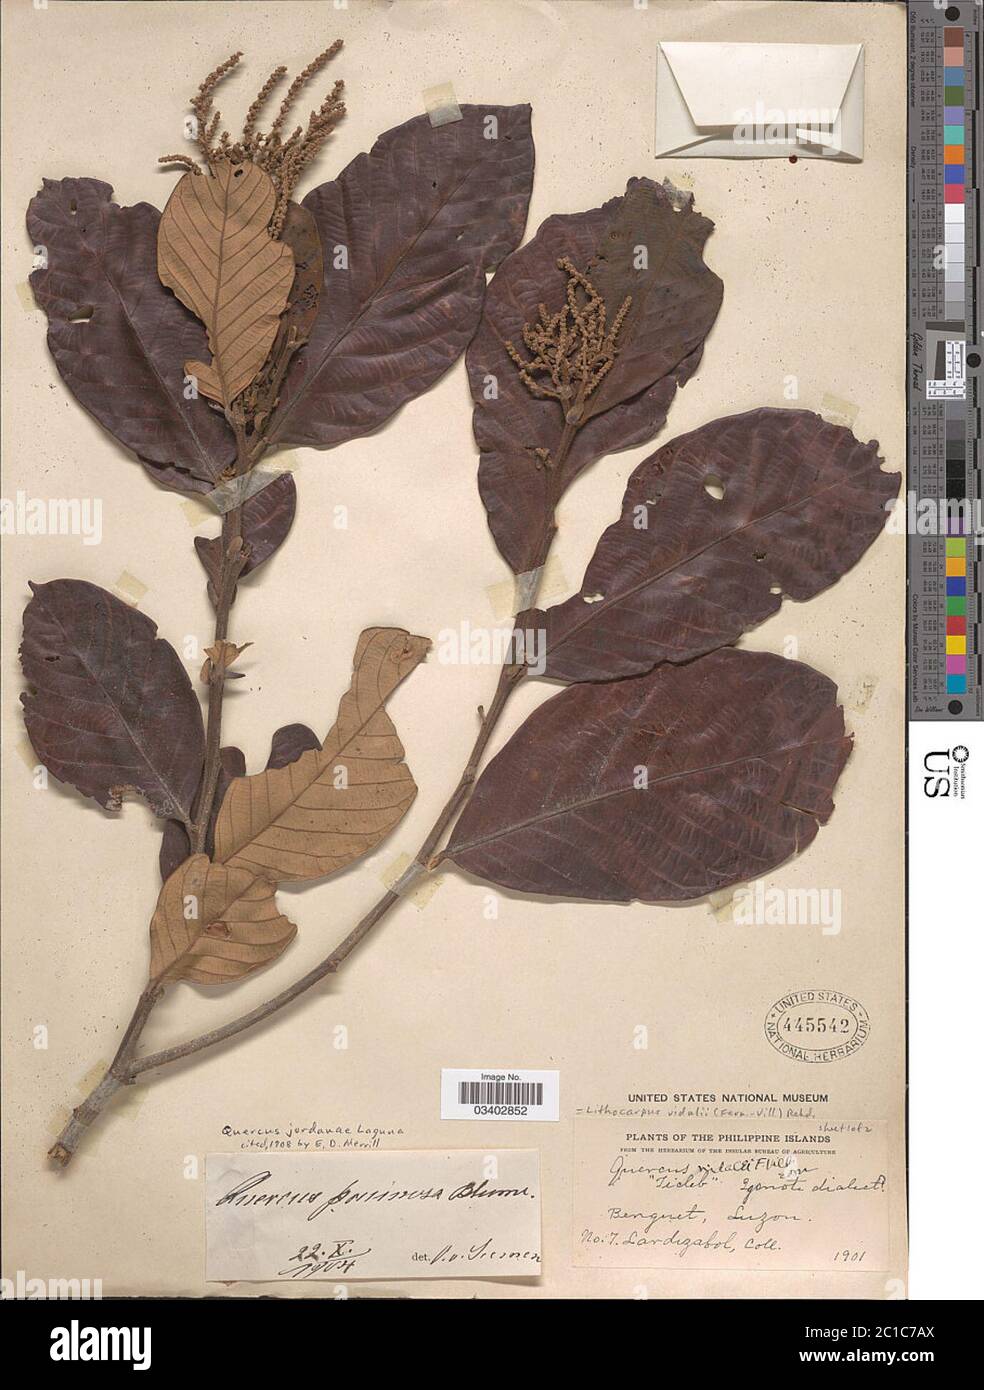 Lithocarpus vidalii FernVill Rehder Lithocarpus vidalii FernVill Rehder. Stock Photo